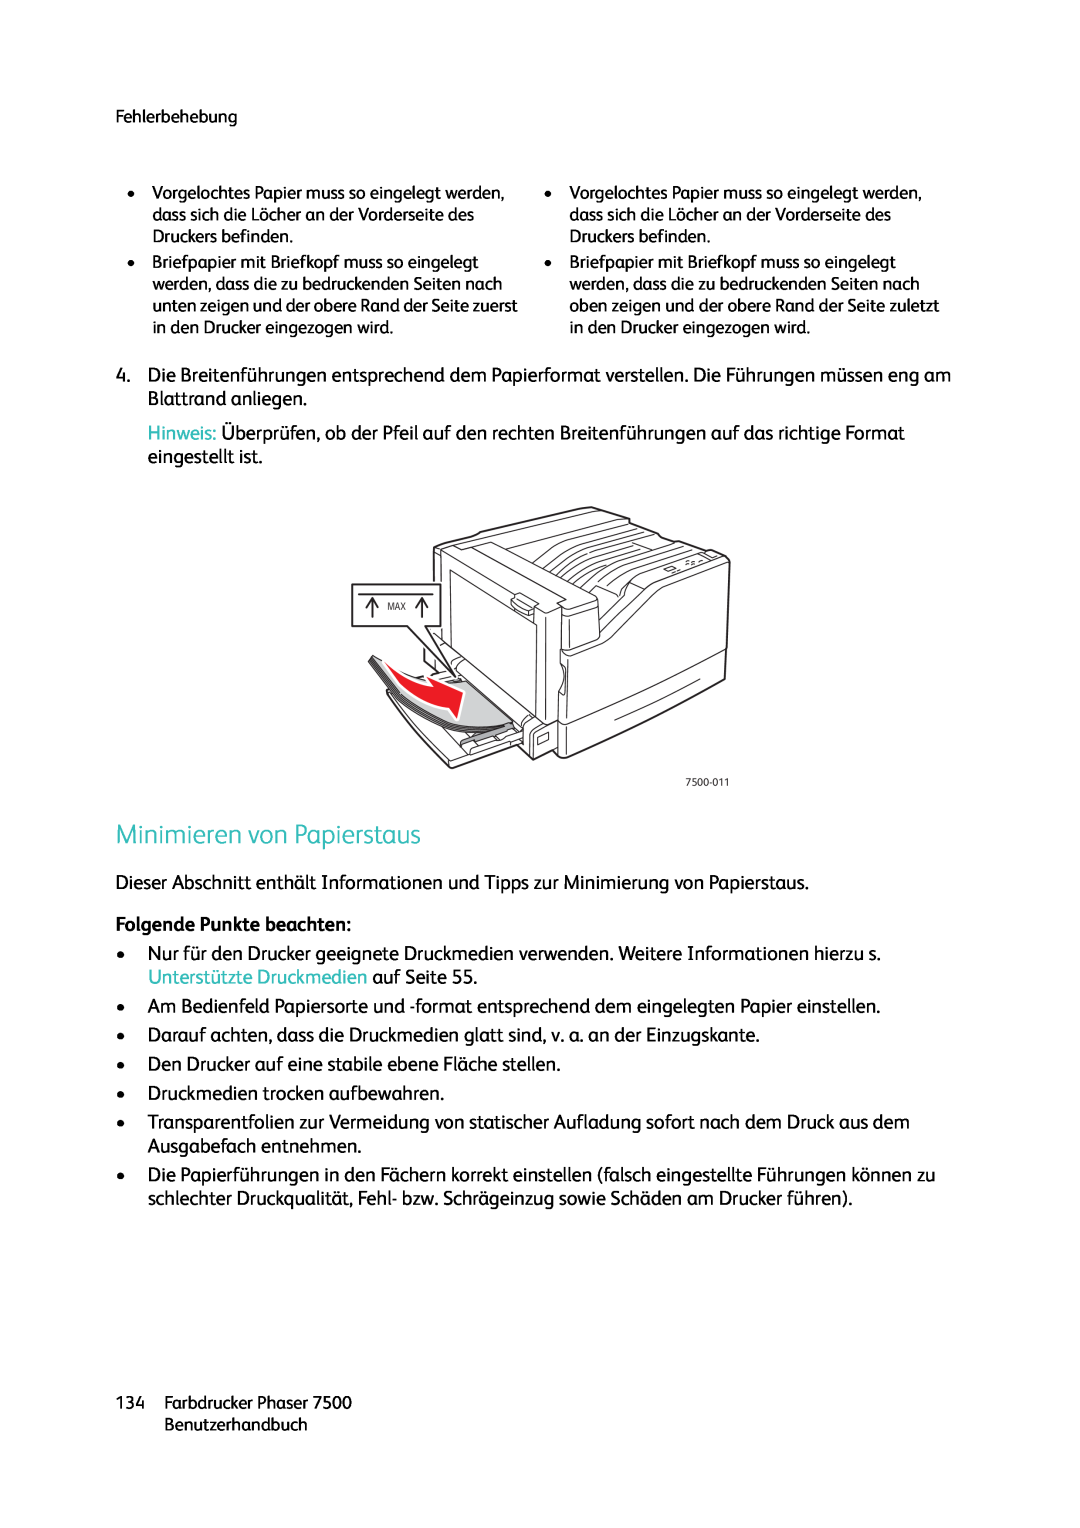 Xerox 7500 color printer manual Minimieren von Papierstaus, Folgende Punkte beachten 